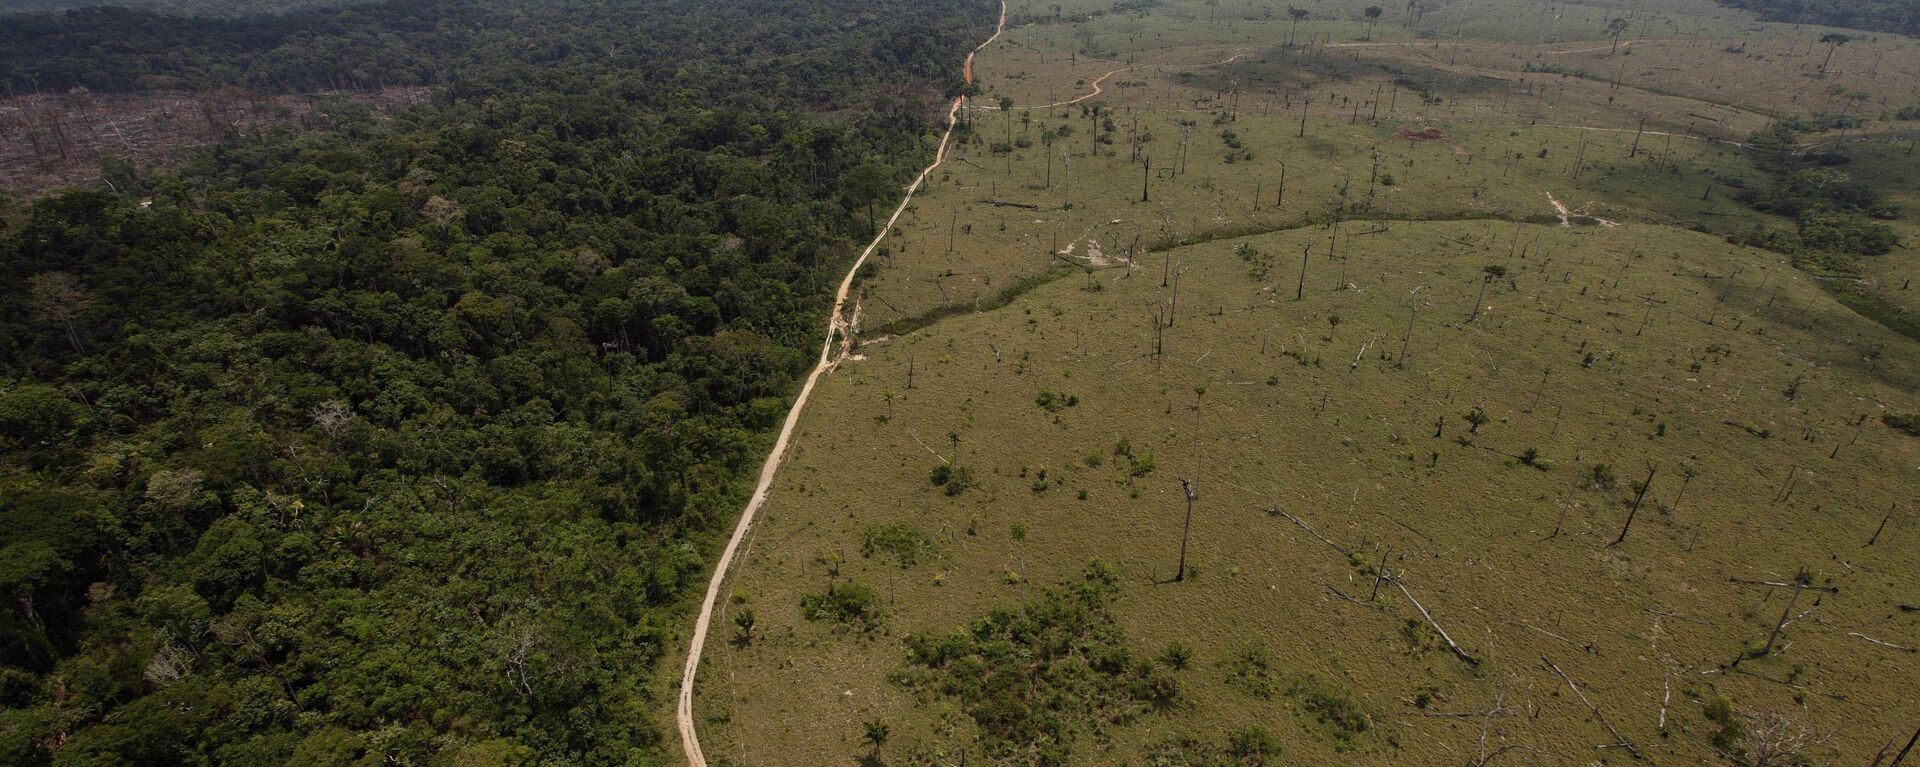 Una área deforestada en la Amazonía brasileña - Sputnik Mundo, 1920, 23.11.2021